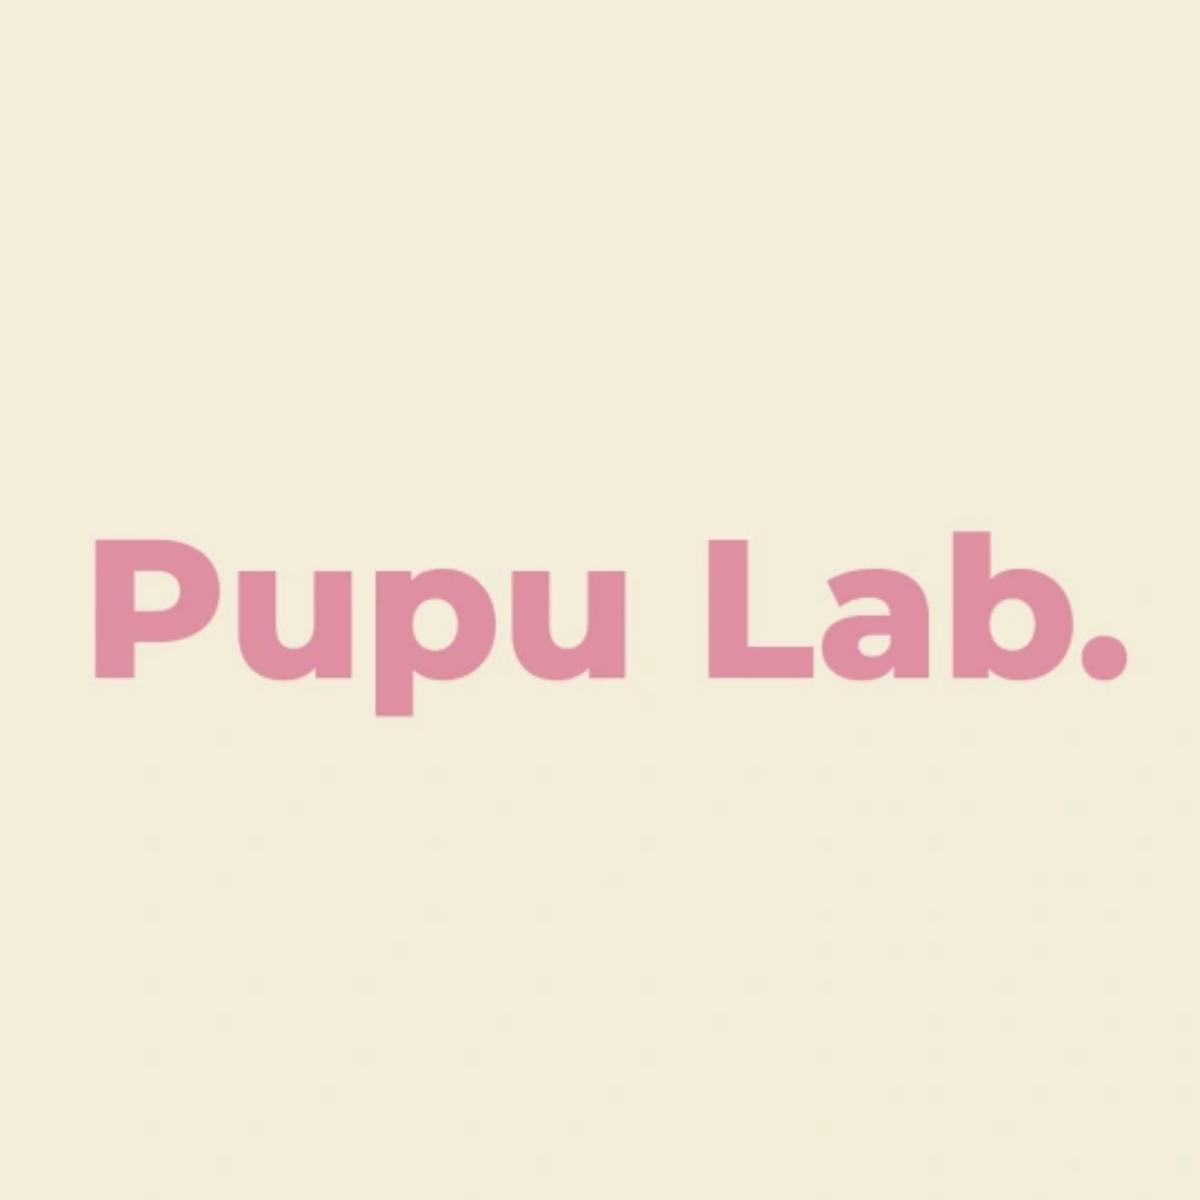 Pupu Lab